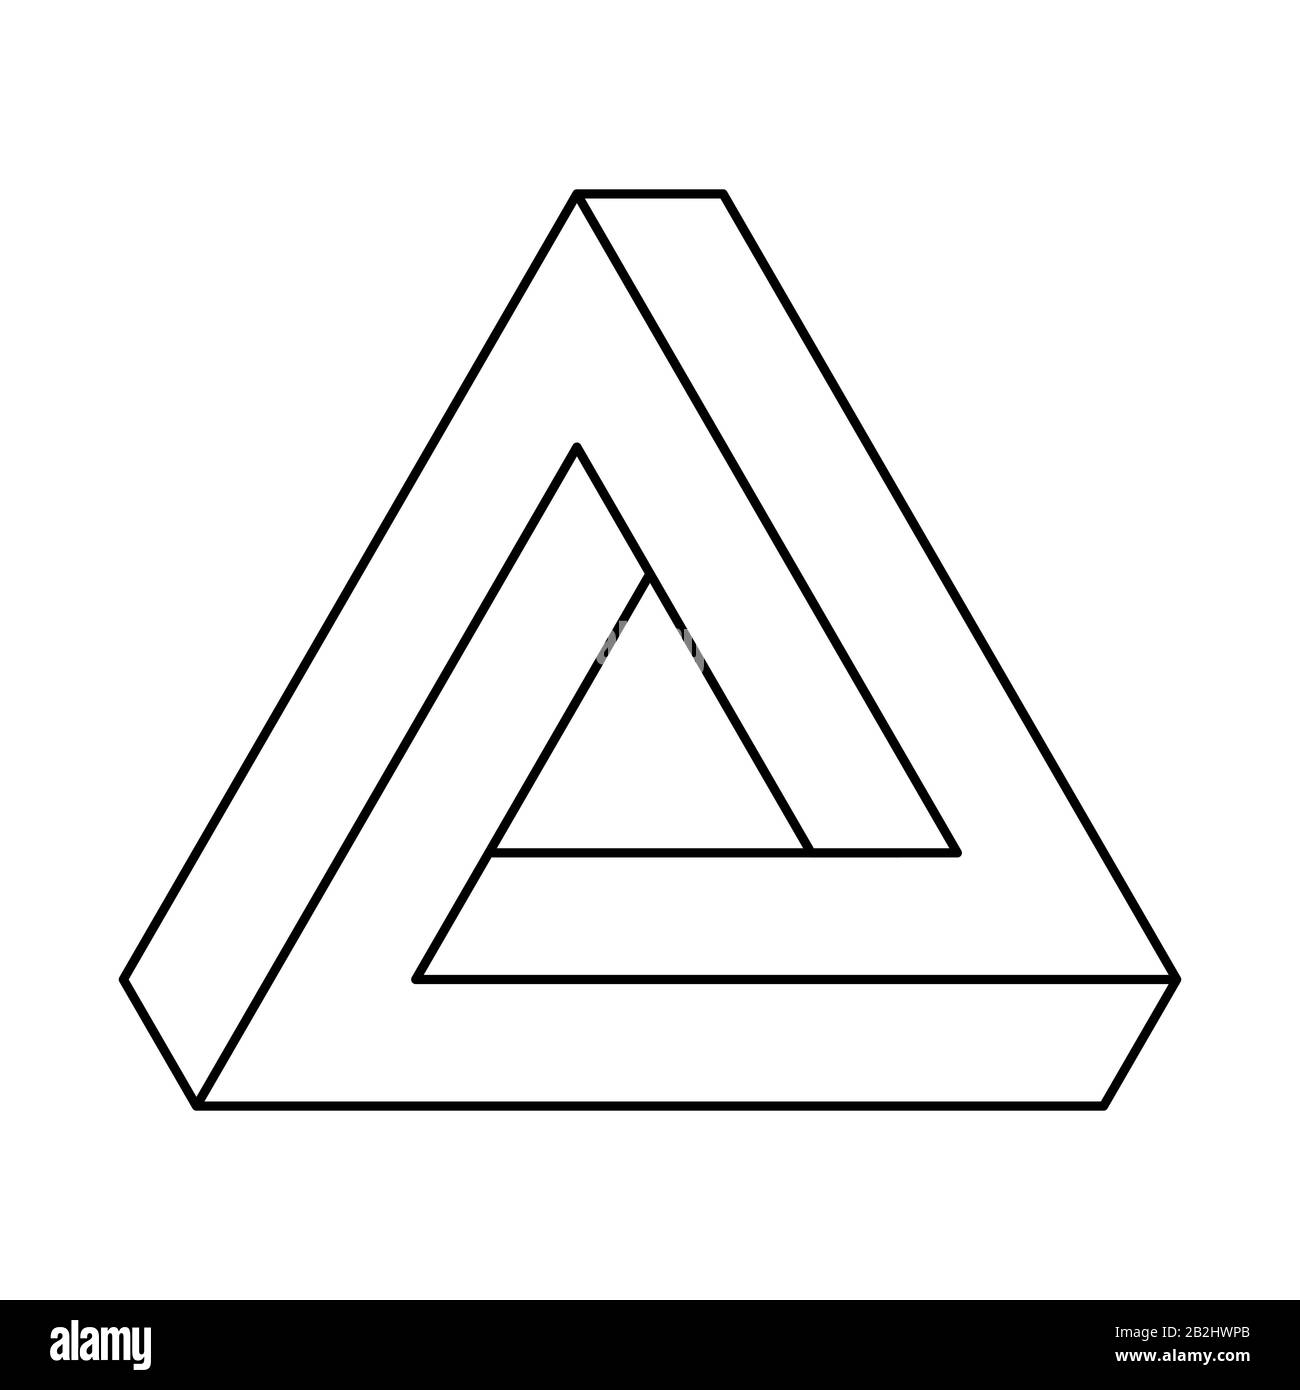 Triangolo Penrose, illusione ottica, contorni neri. Penrose tribar, un oggetto impossibile, sembra essere un oggetto solido, fatto di tre barre diritte. Foto Stock